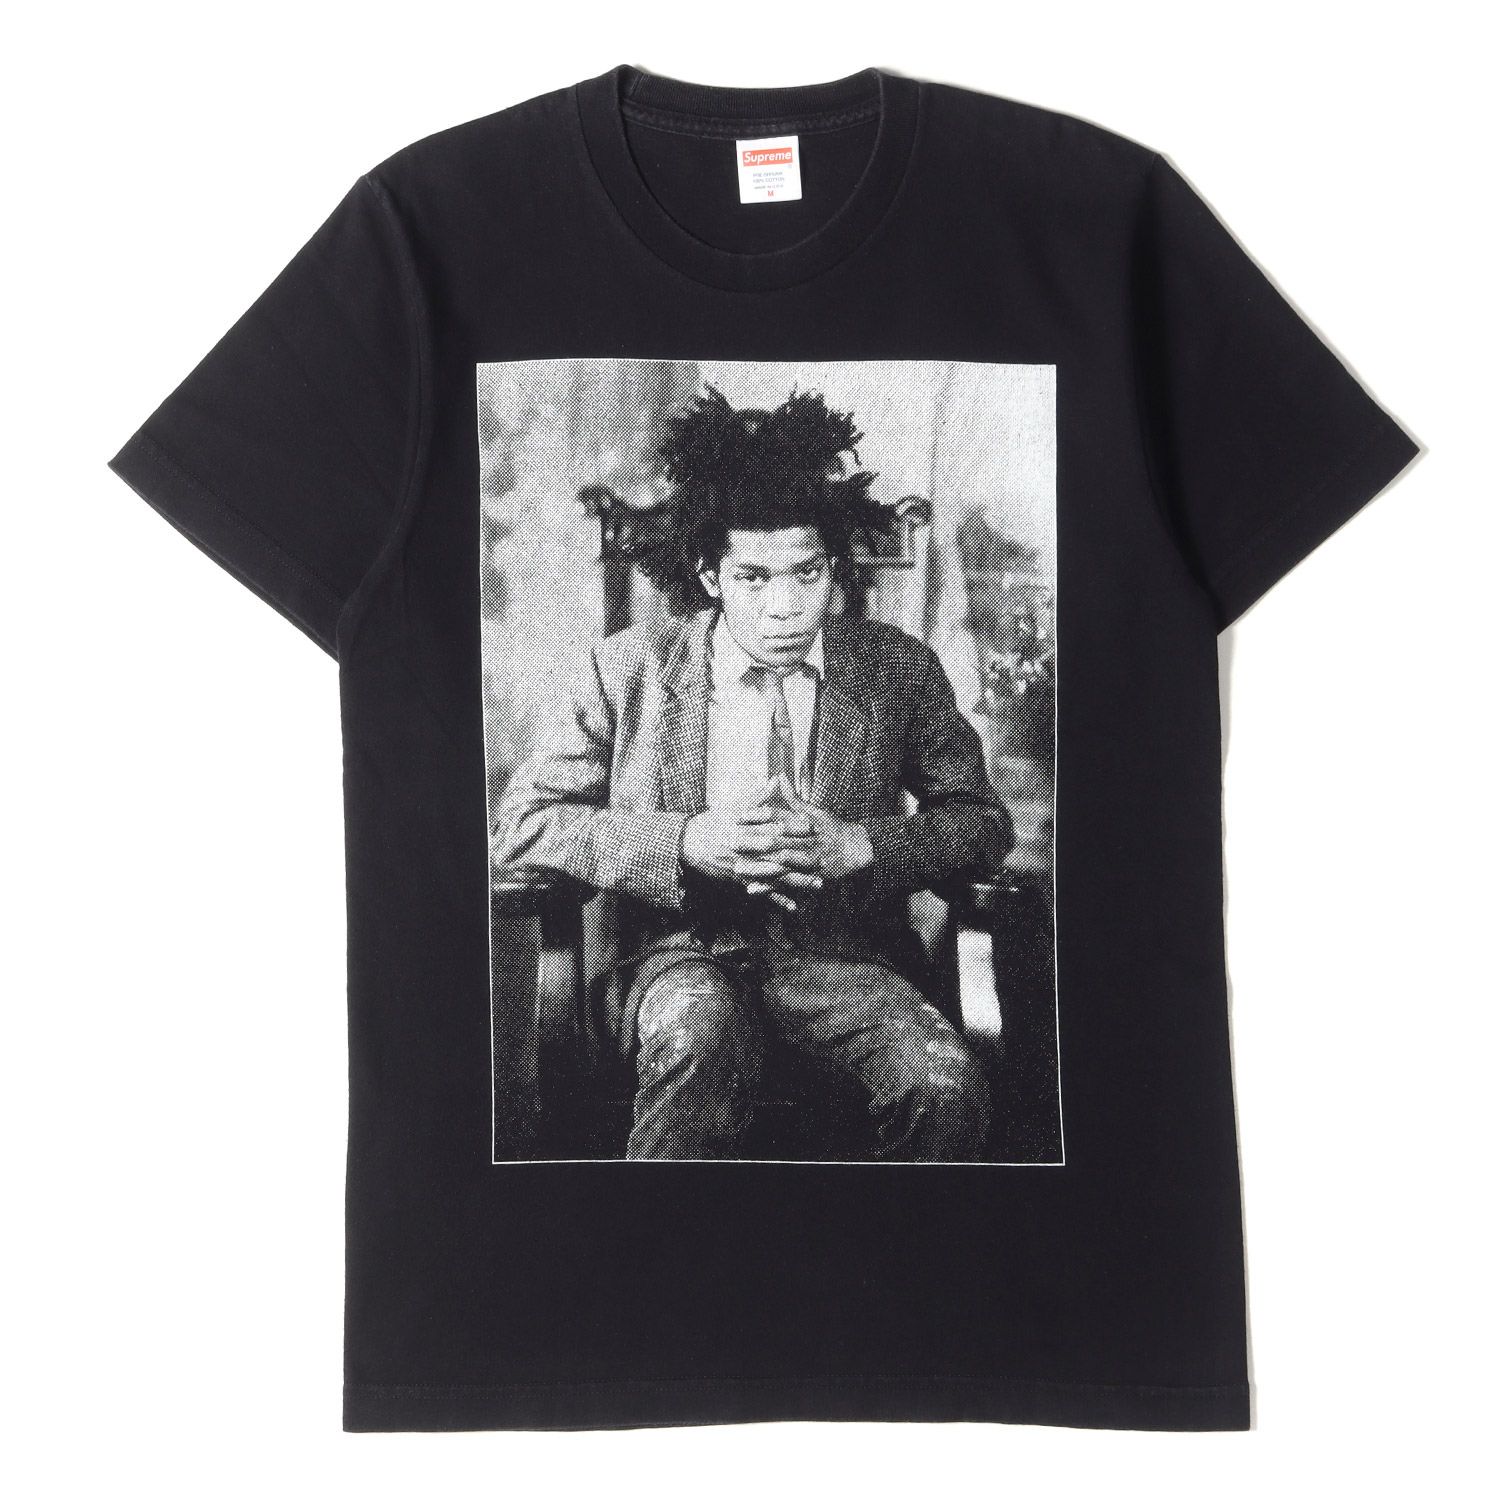 Supreme シュプリーム Tシャツ サイズ:M 13AW Basquiat バスキア ポートレイト フォト プリント クルーネック 半袖 Tシャツ  Portrait Tee ブラック 黒 トップス カジュアル ストリート ブランド コラボ